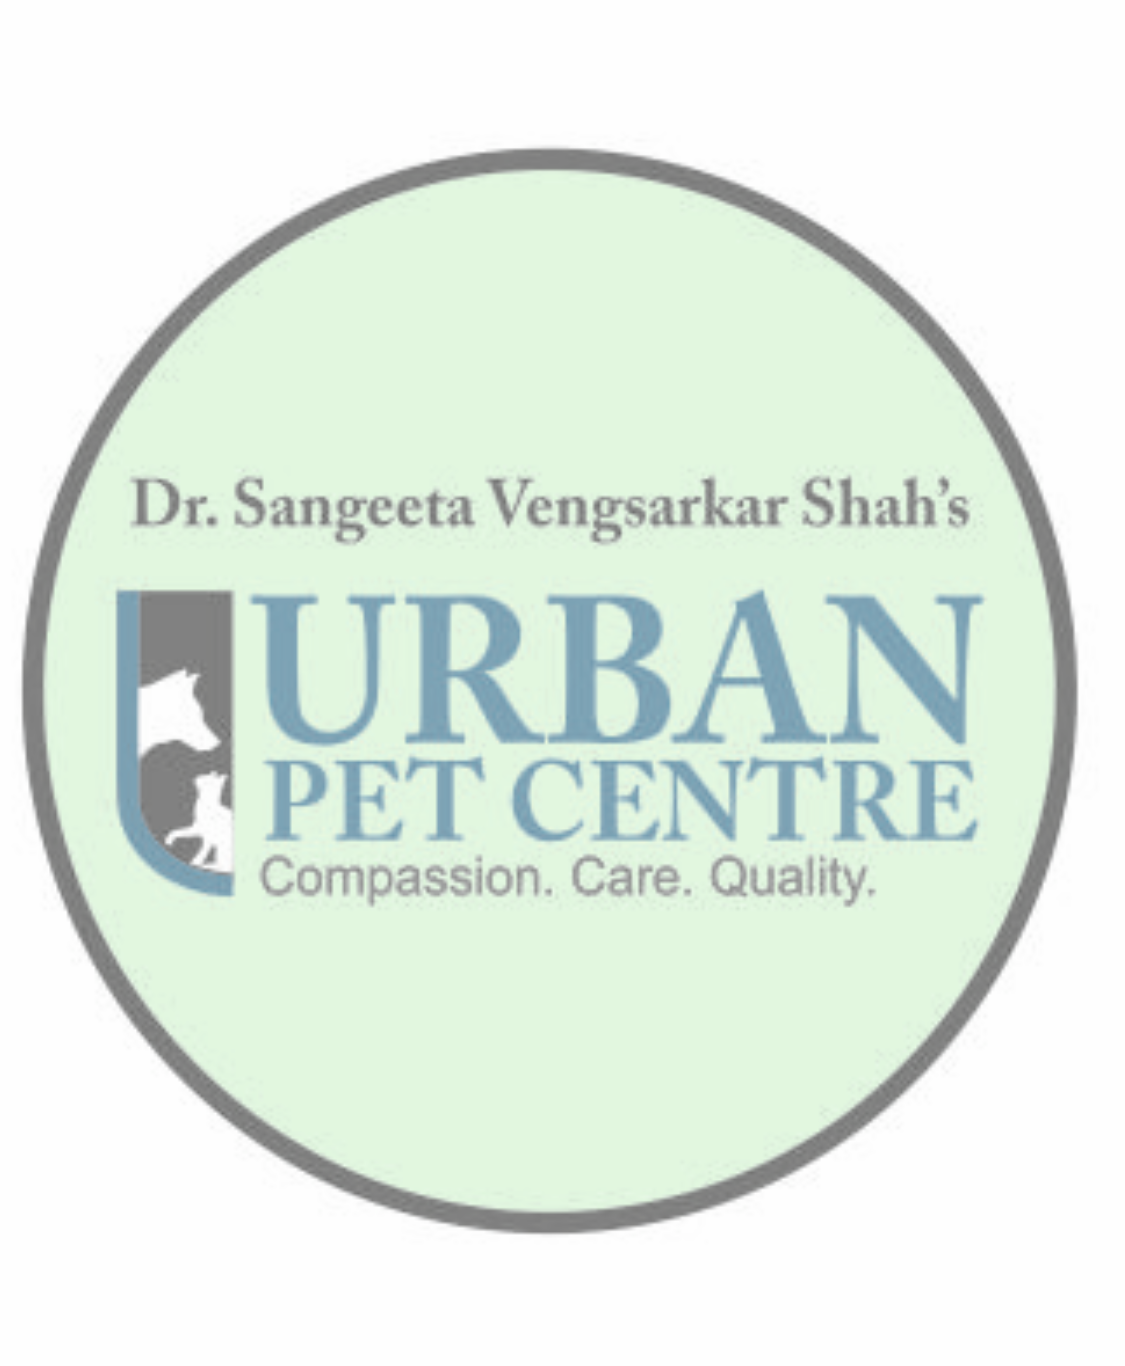 Urban Pet Centre|Hospitals|Medical Services